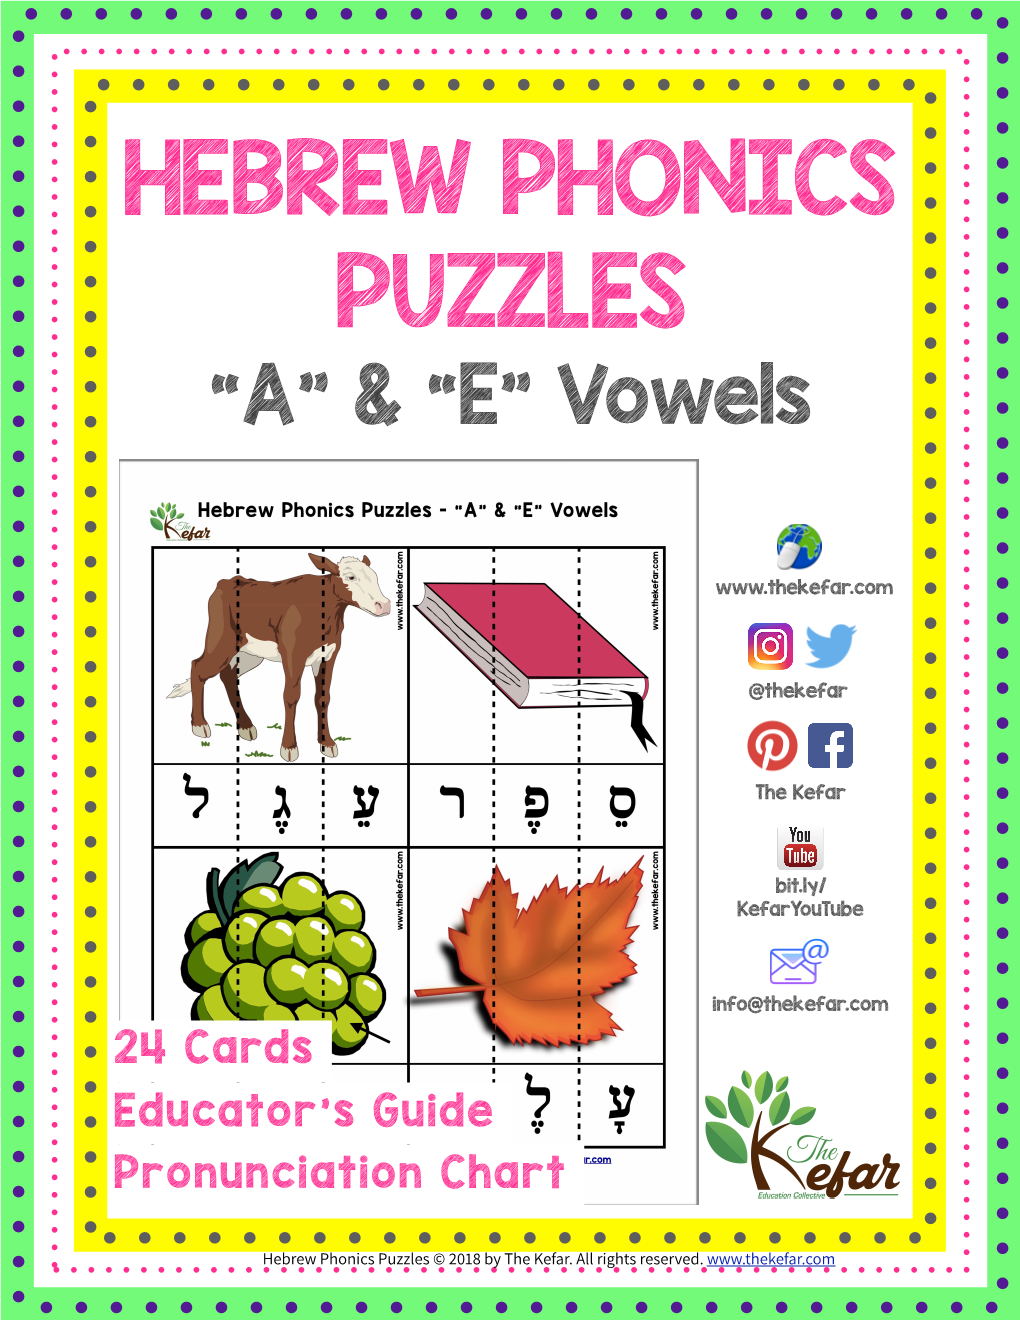 The Kefar Hebrew Phonics Puzzles